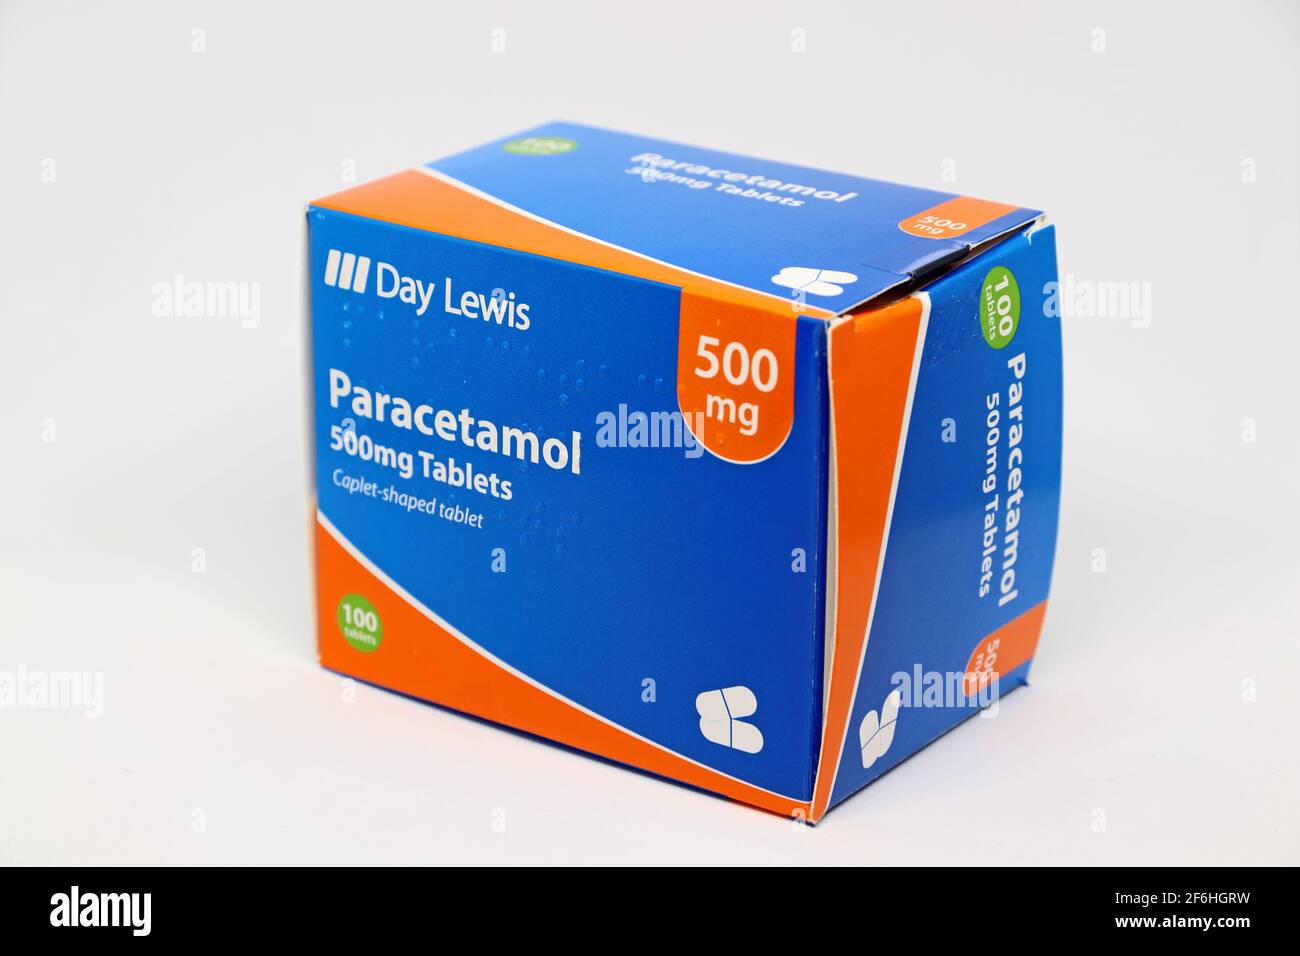 Photo de la boîte de Paracetamol 500mg comprimés, utilisé pour soulager la douleur Banque D'Images